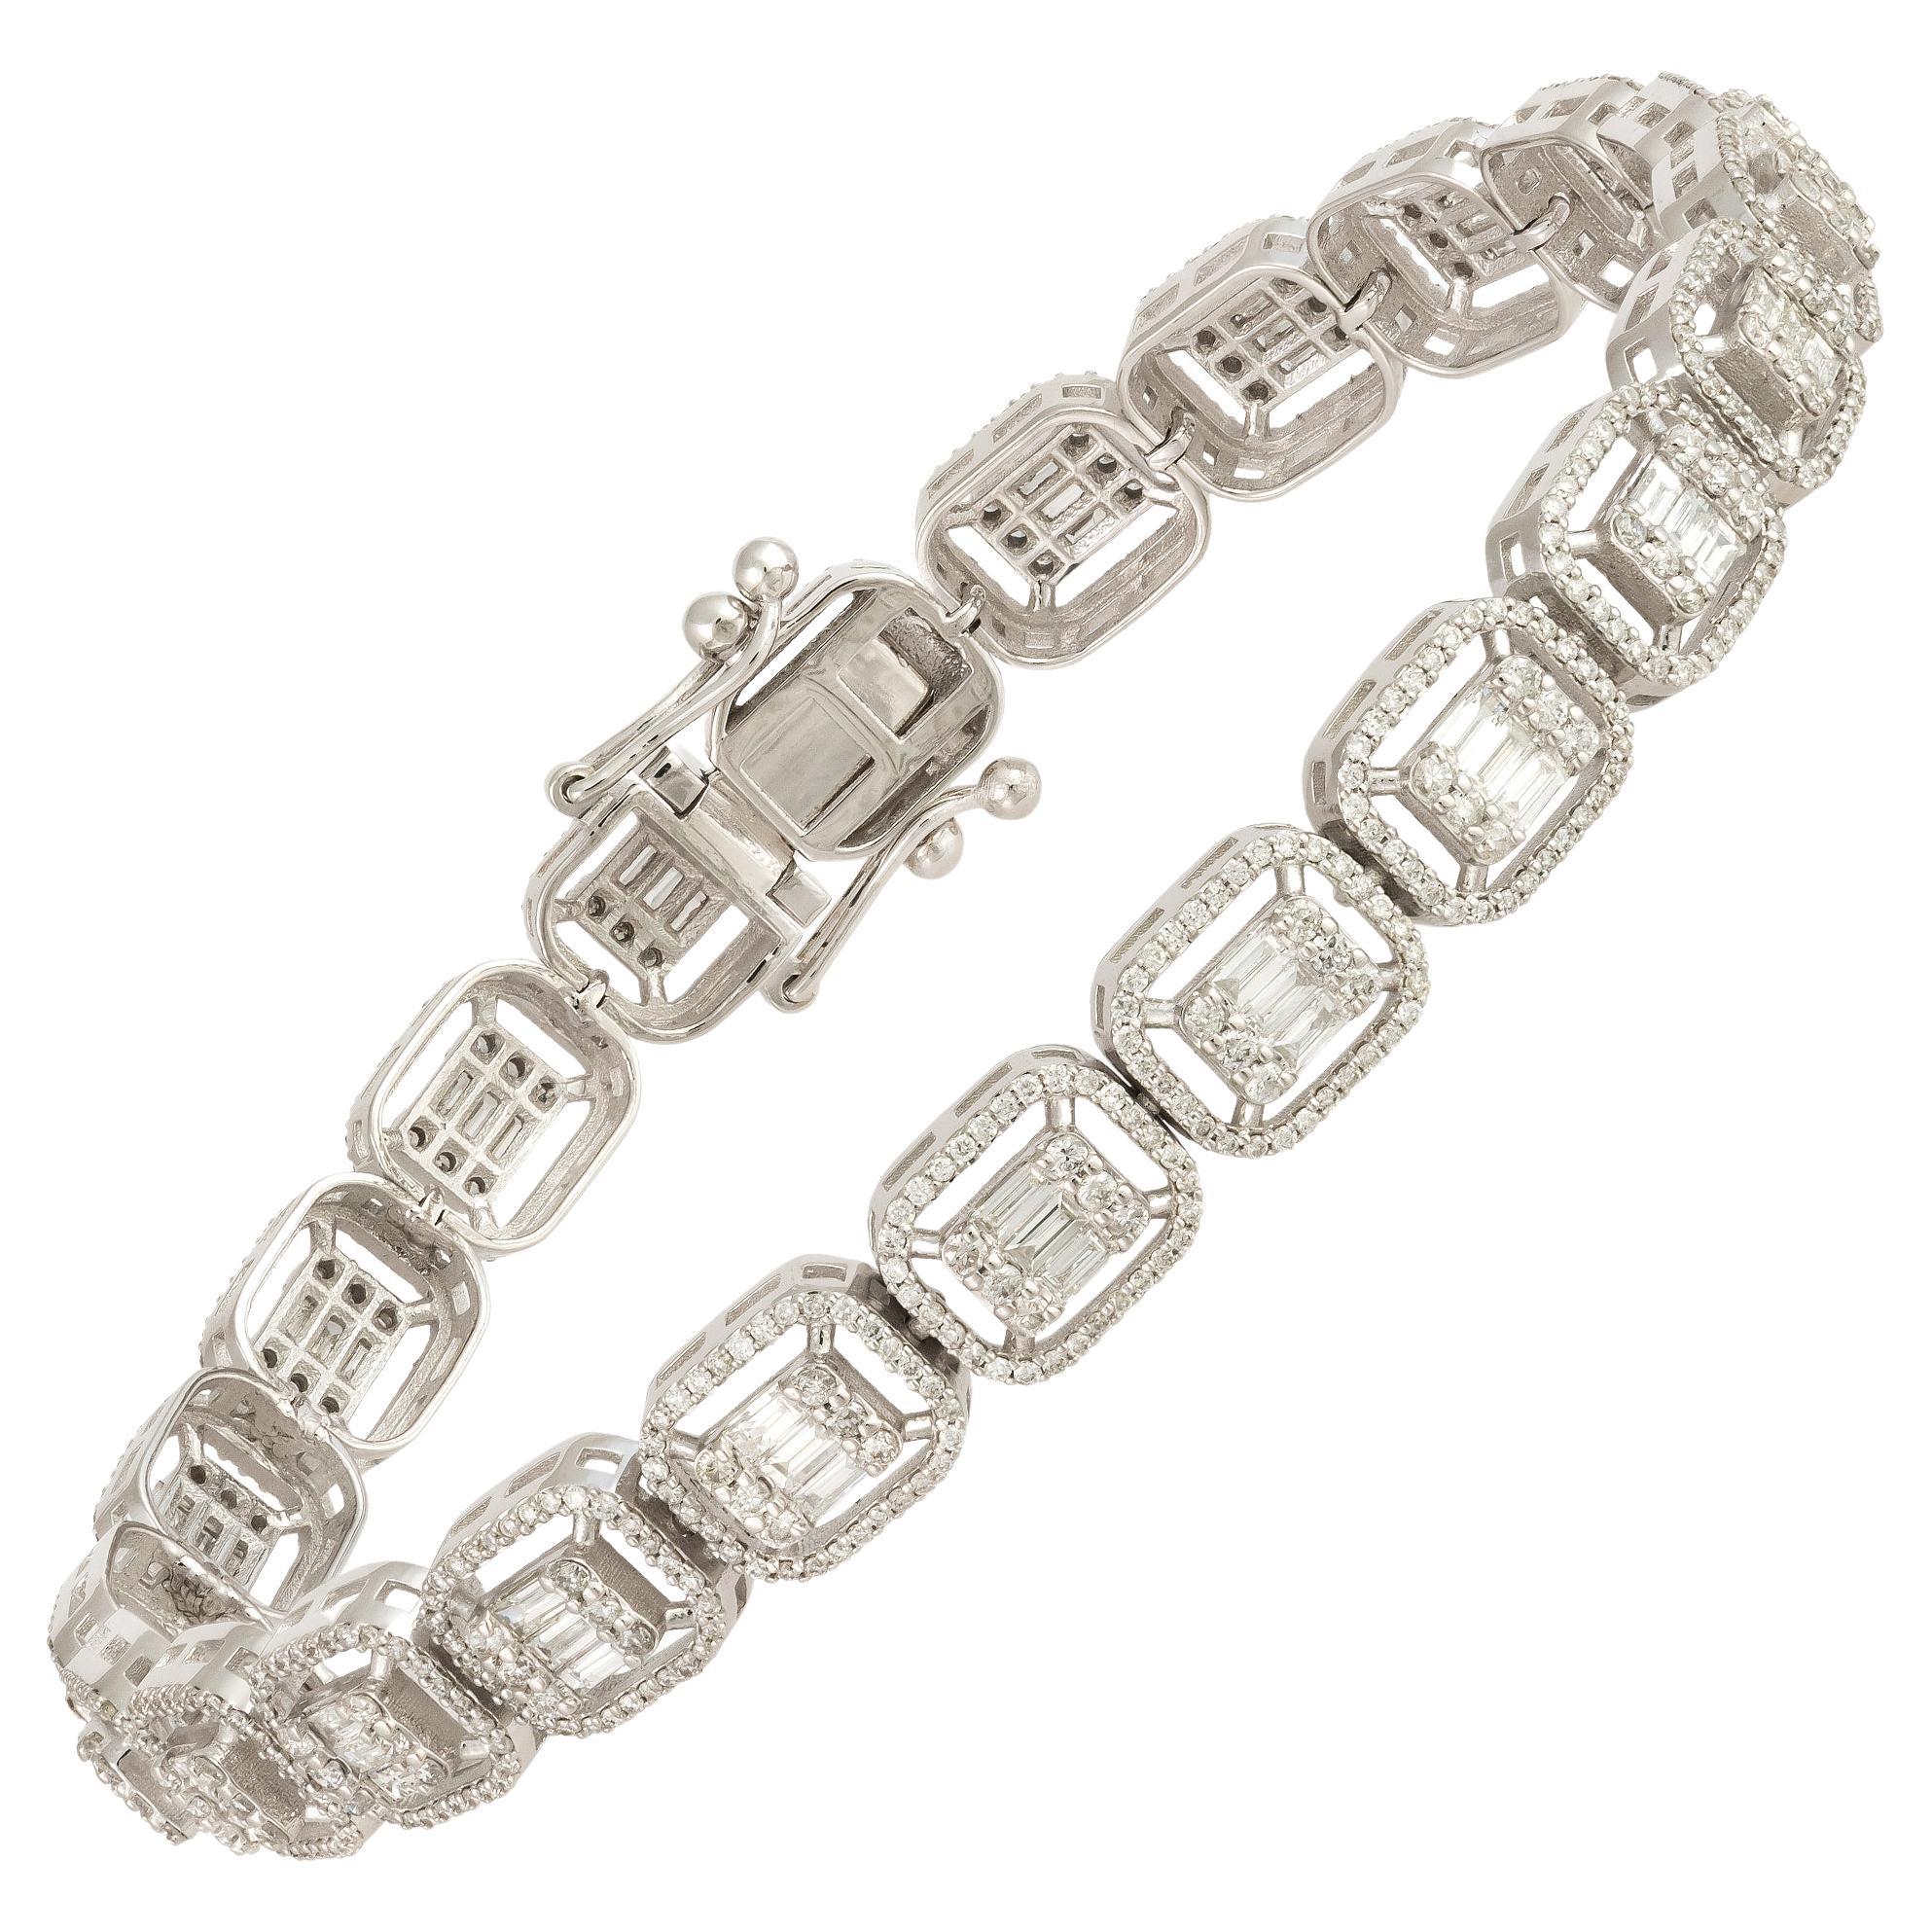 Classic White Gold 18K Bracelet Diamond For Her For Sale